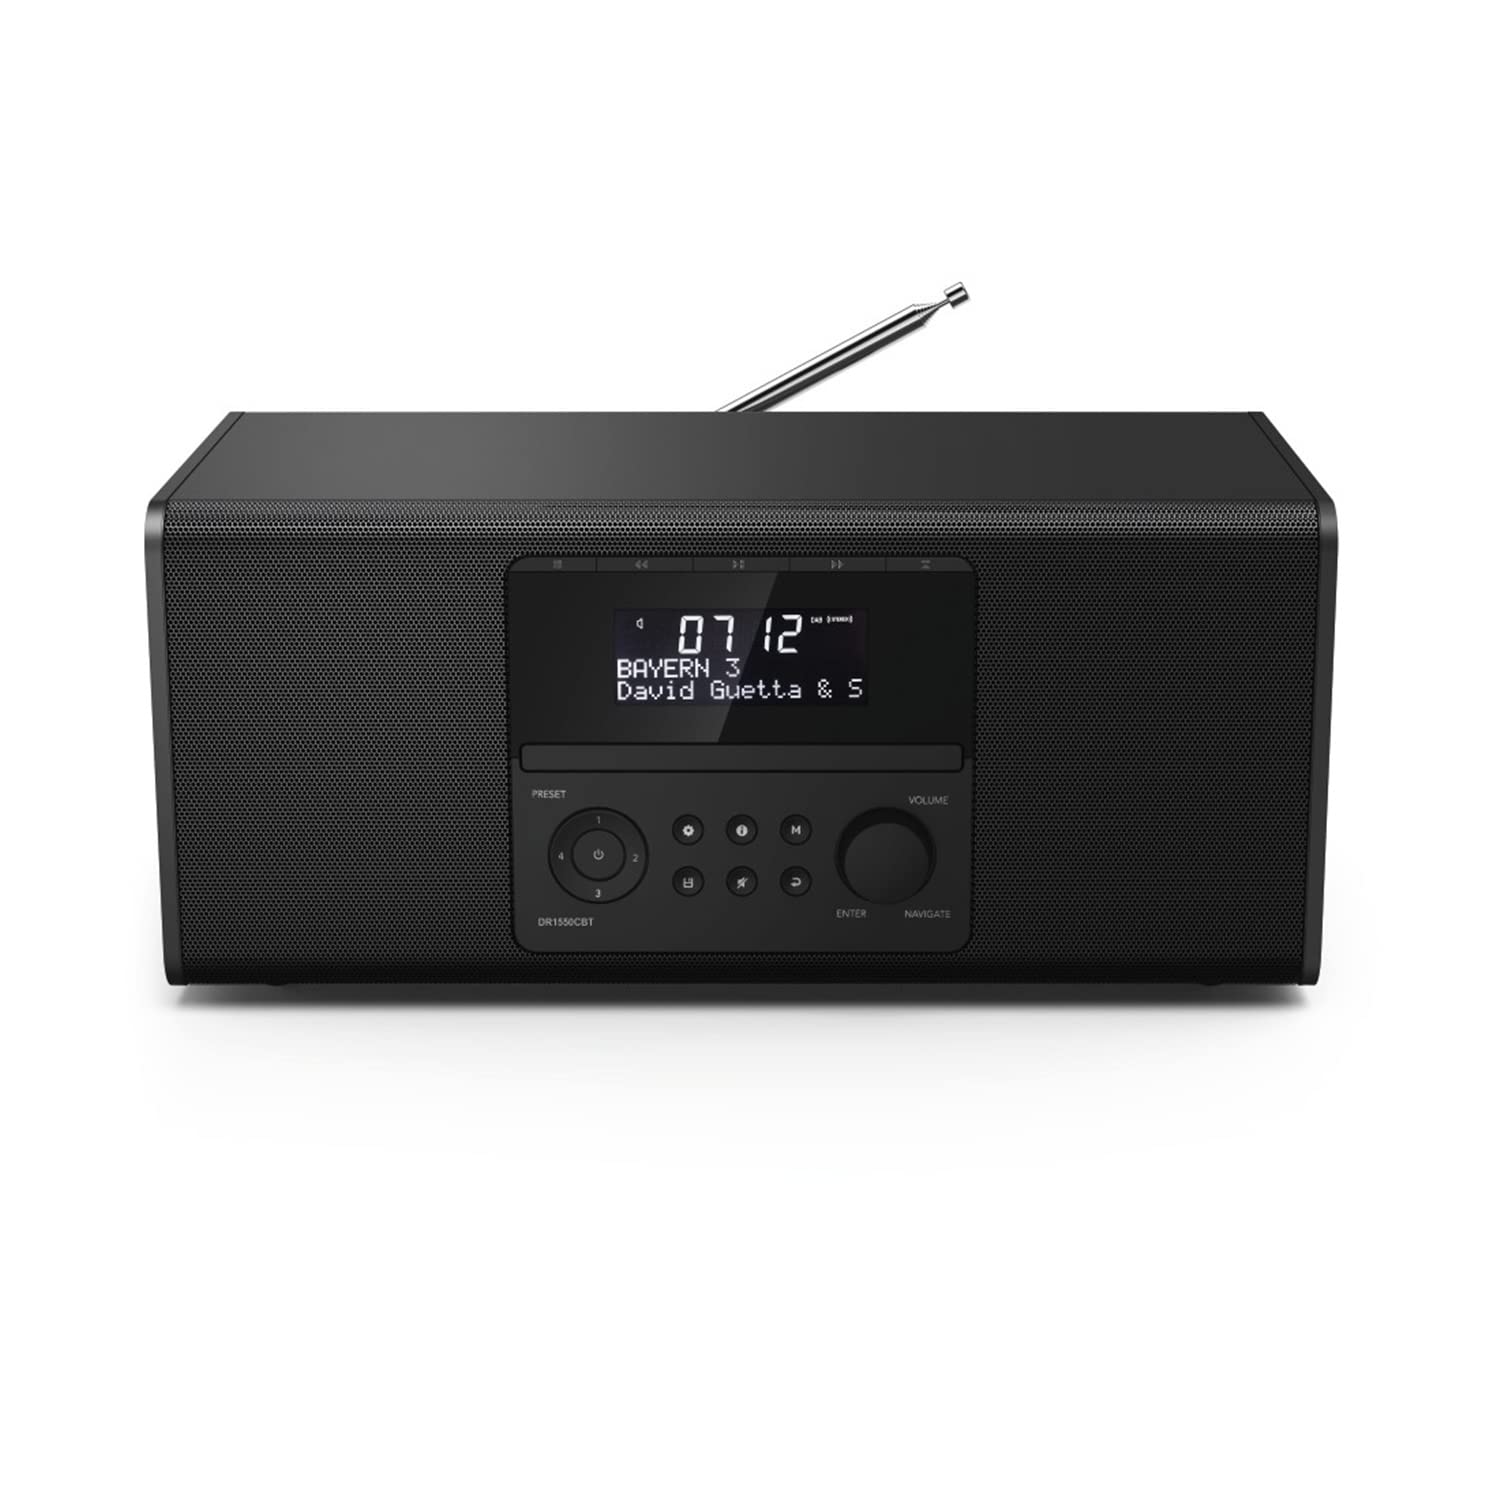 Hama DAB+ Radio mit CD-Player (Bluetooth/USB/UKW/DAB Digitalradio, Radio-Wecker mit 2 Alarmzeiten/Snooze/Timer, 4 Stationstasten, Stereo, beleuchtetes Display) schwarz